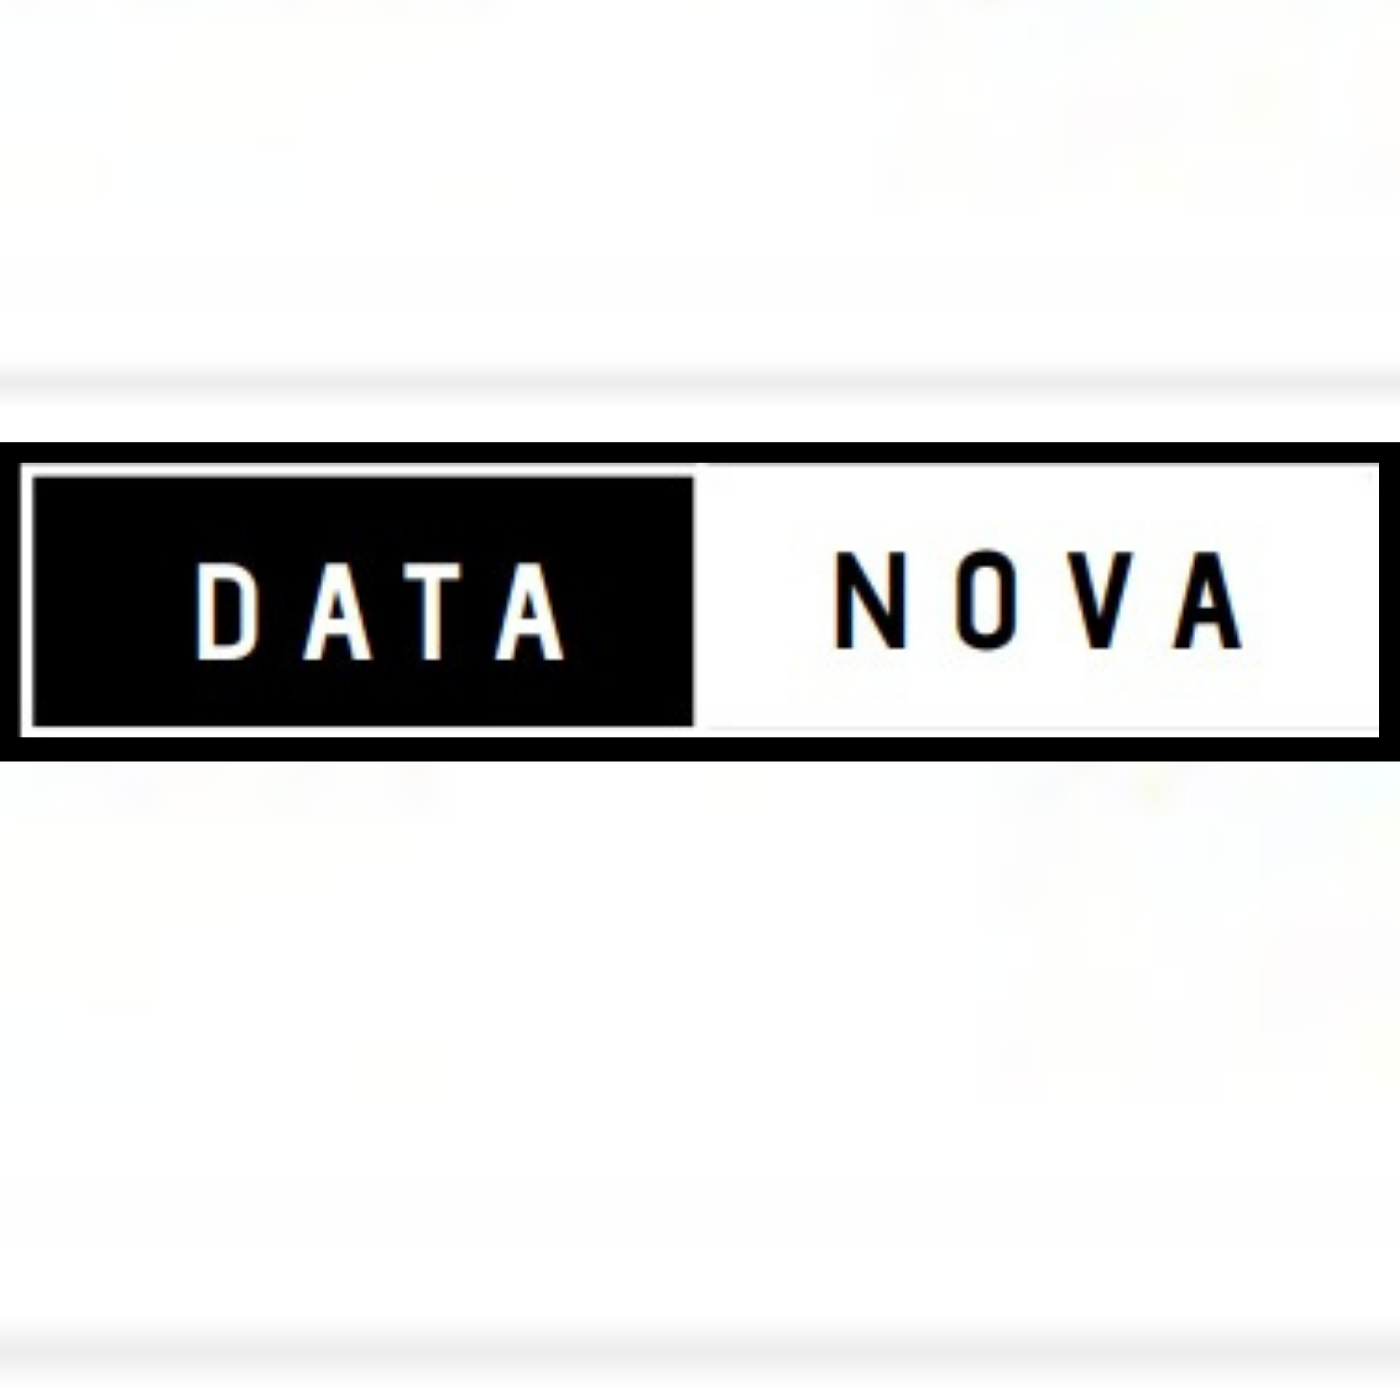 Data Nova logo